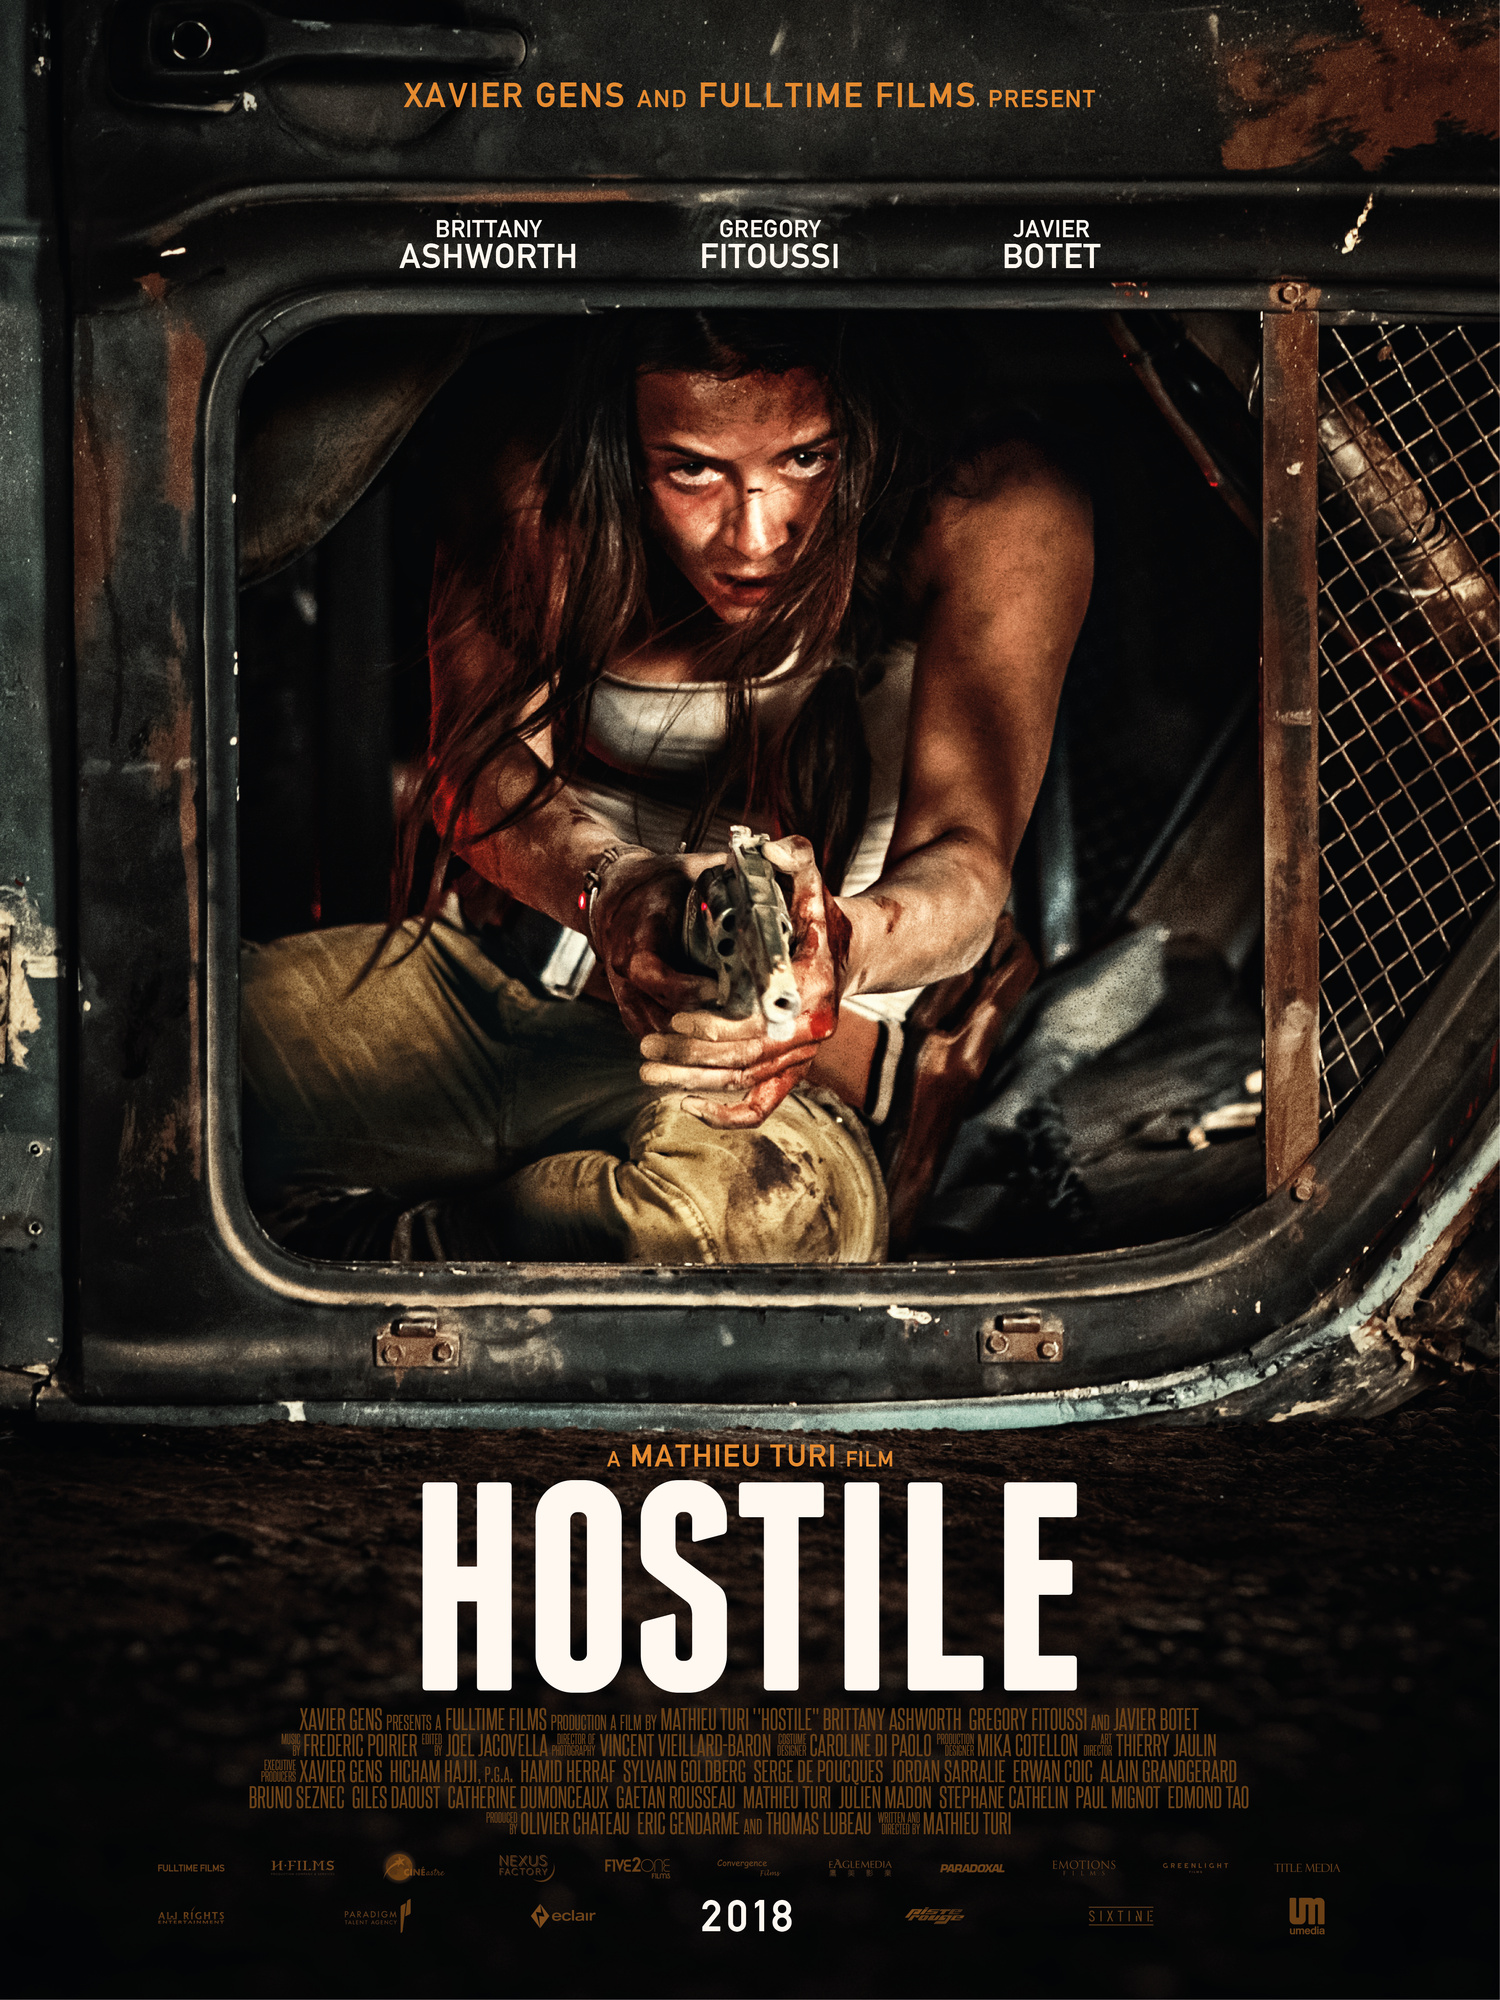 ดูหนังออนไลน์ หนังใหม่ล่าสุด Hostile 2017